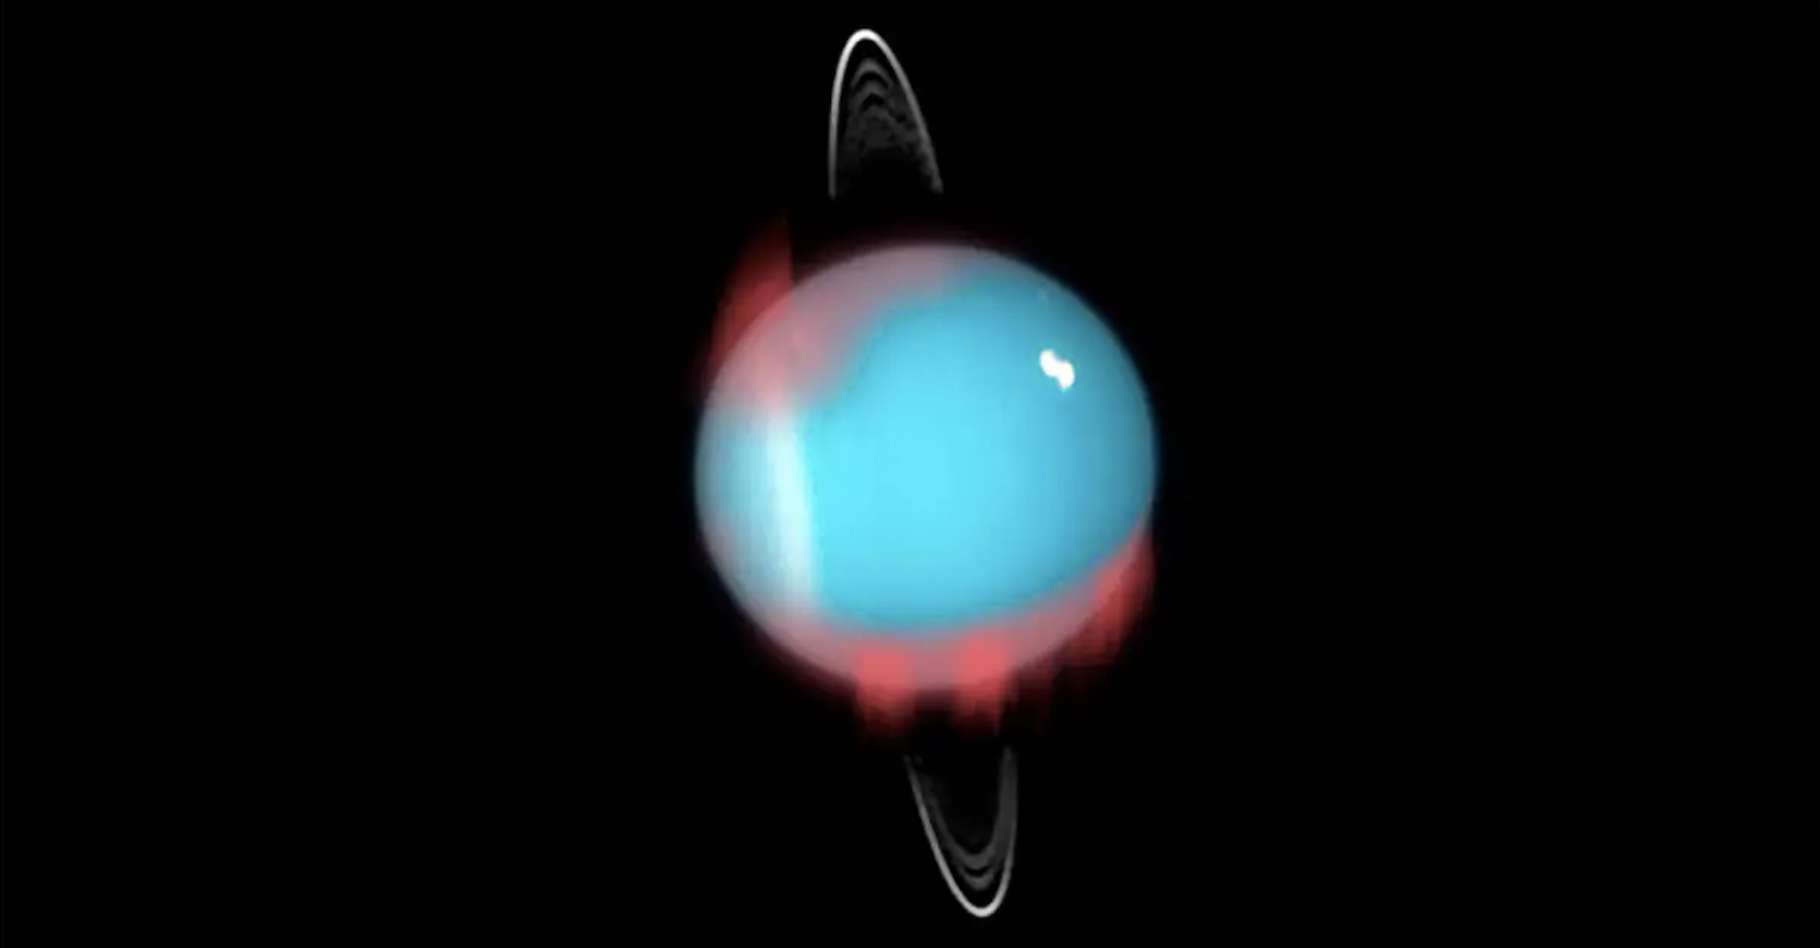 Prachtig infrarood noorderlicht op Uranus